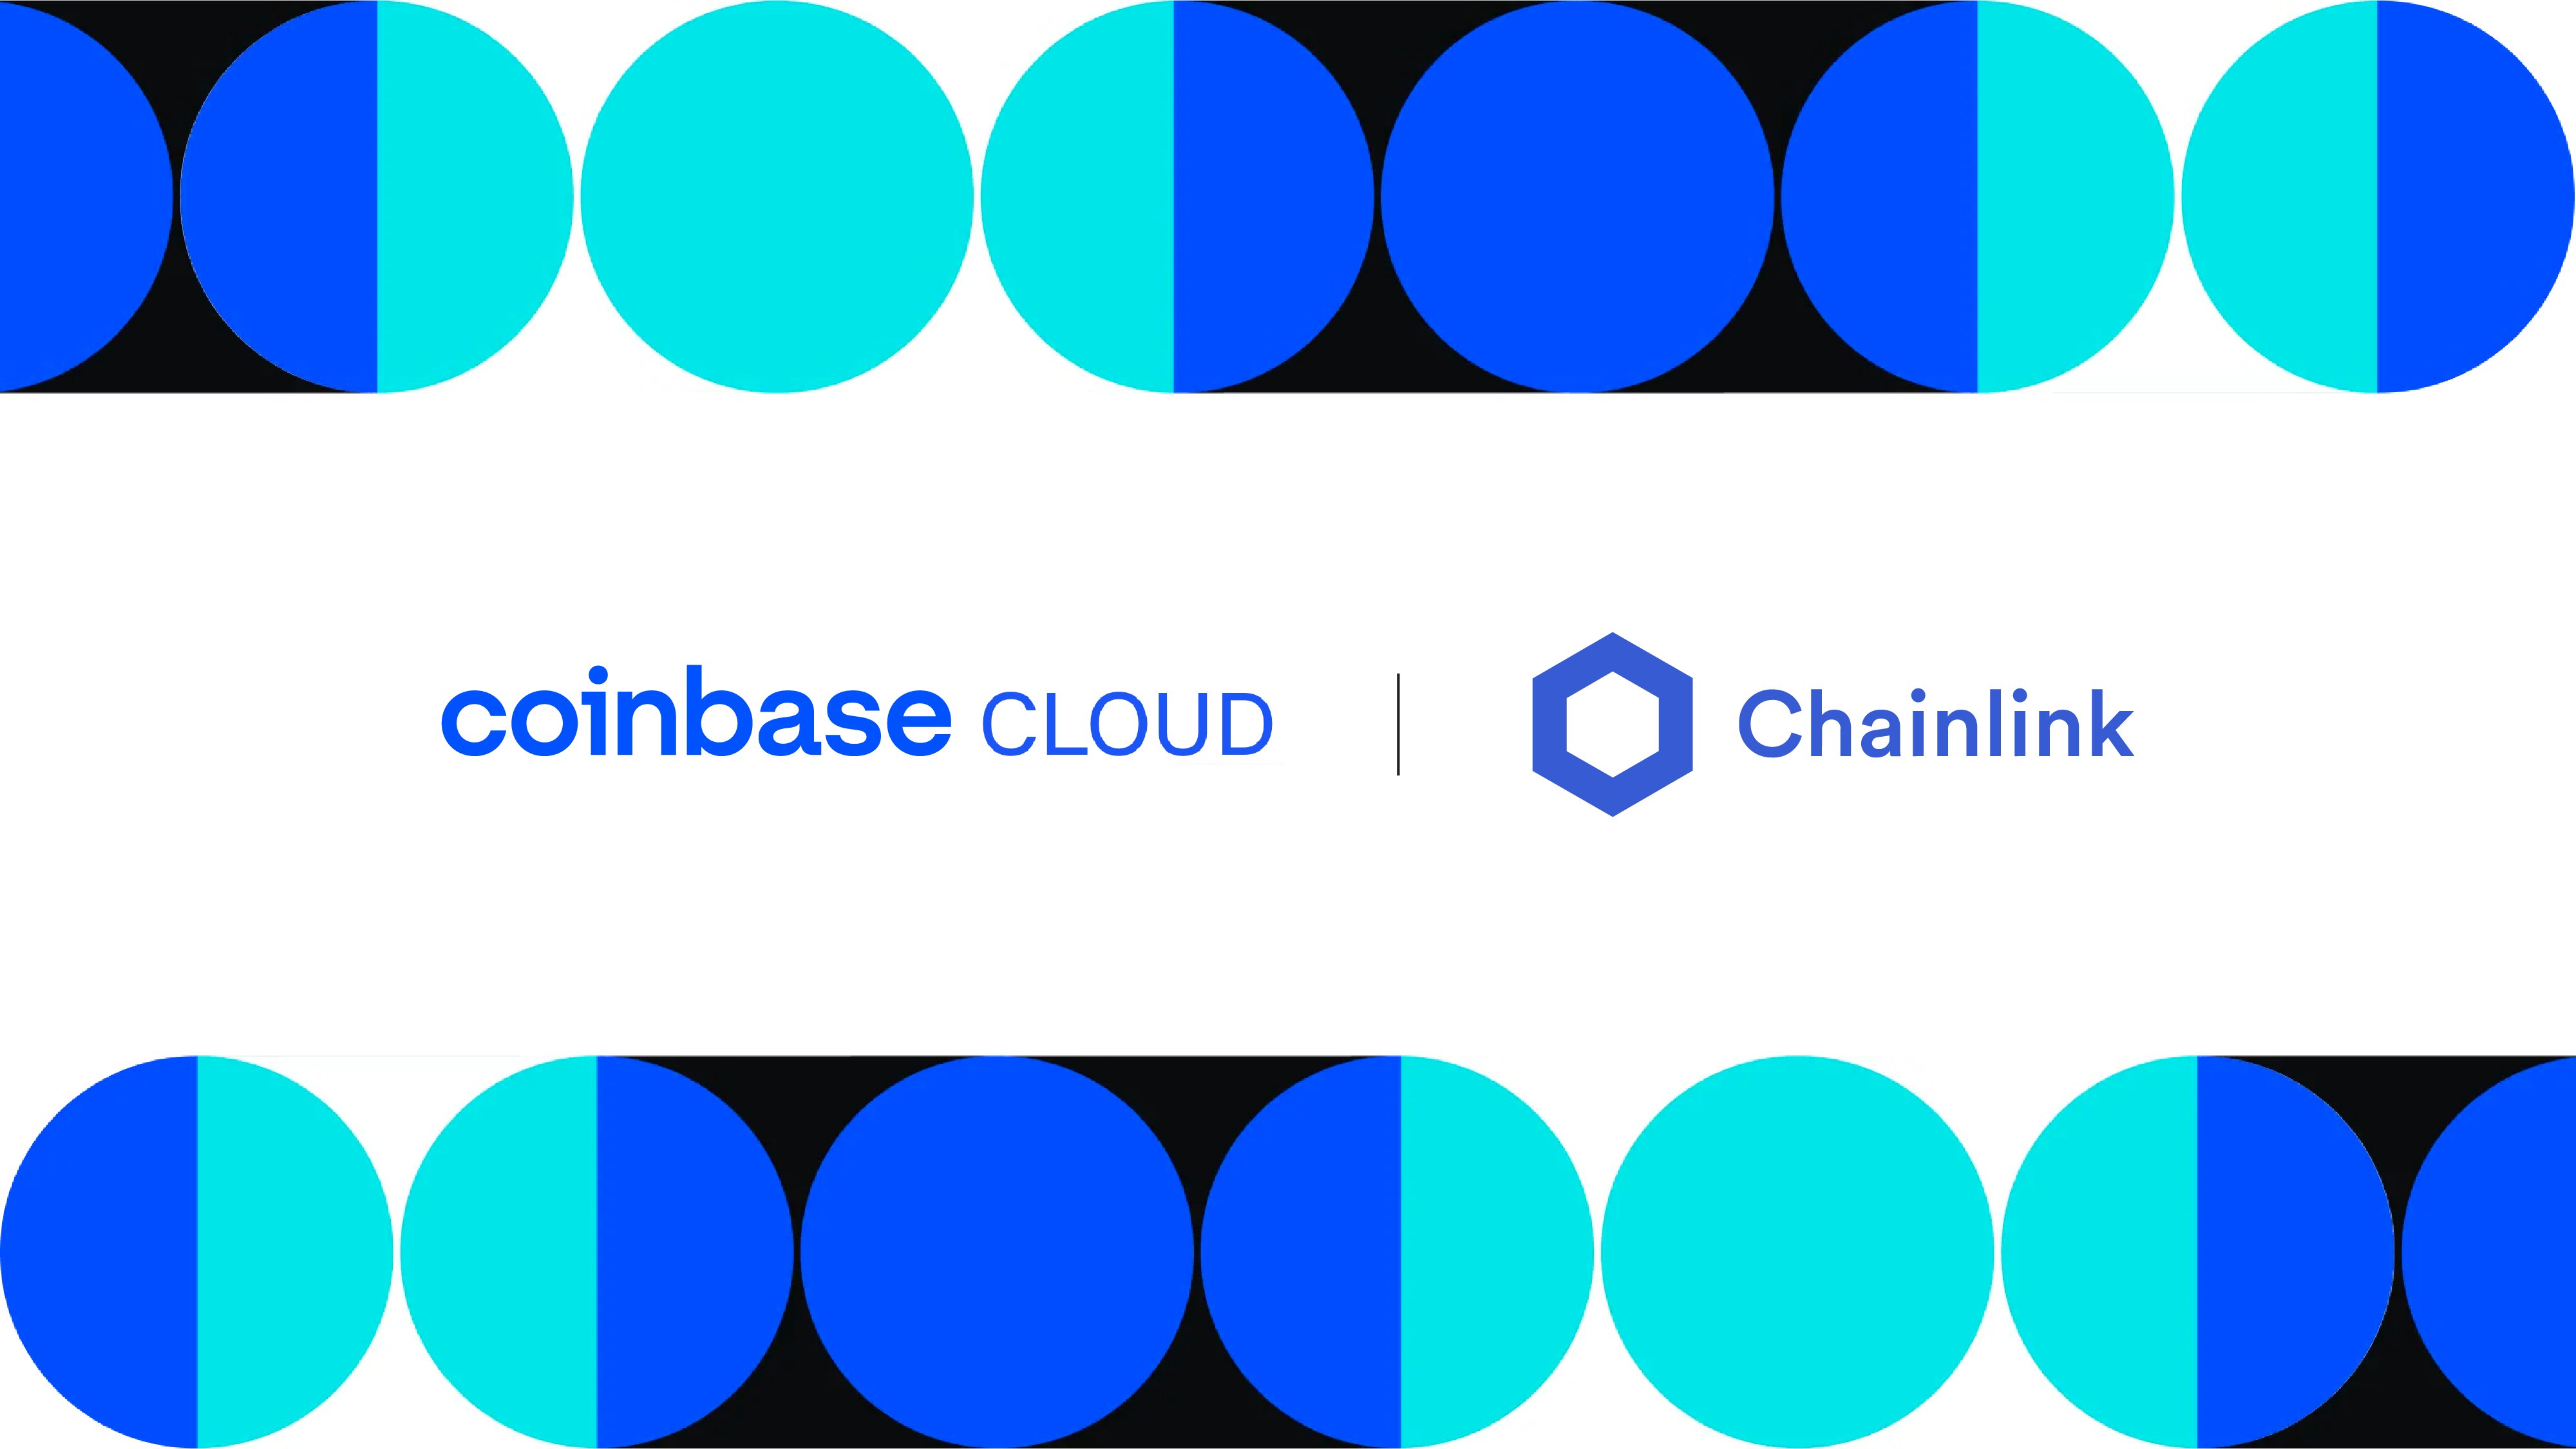 Chainlink annonce un partenariat avec Coinbase Cloud qui va opérer un noeud sur son réseau